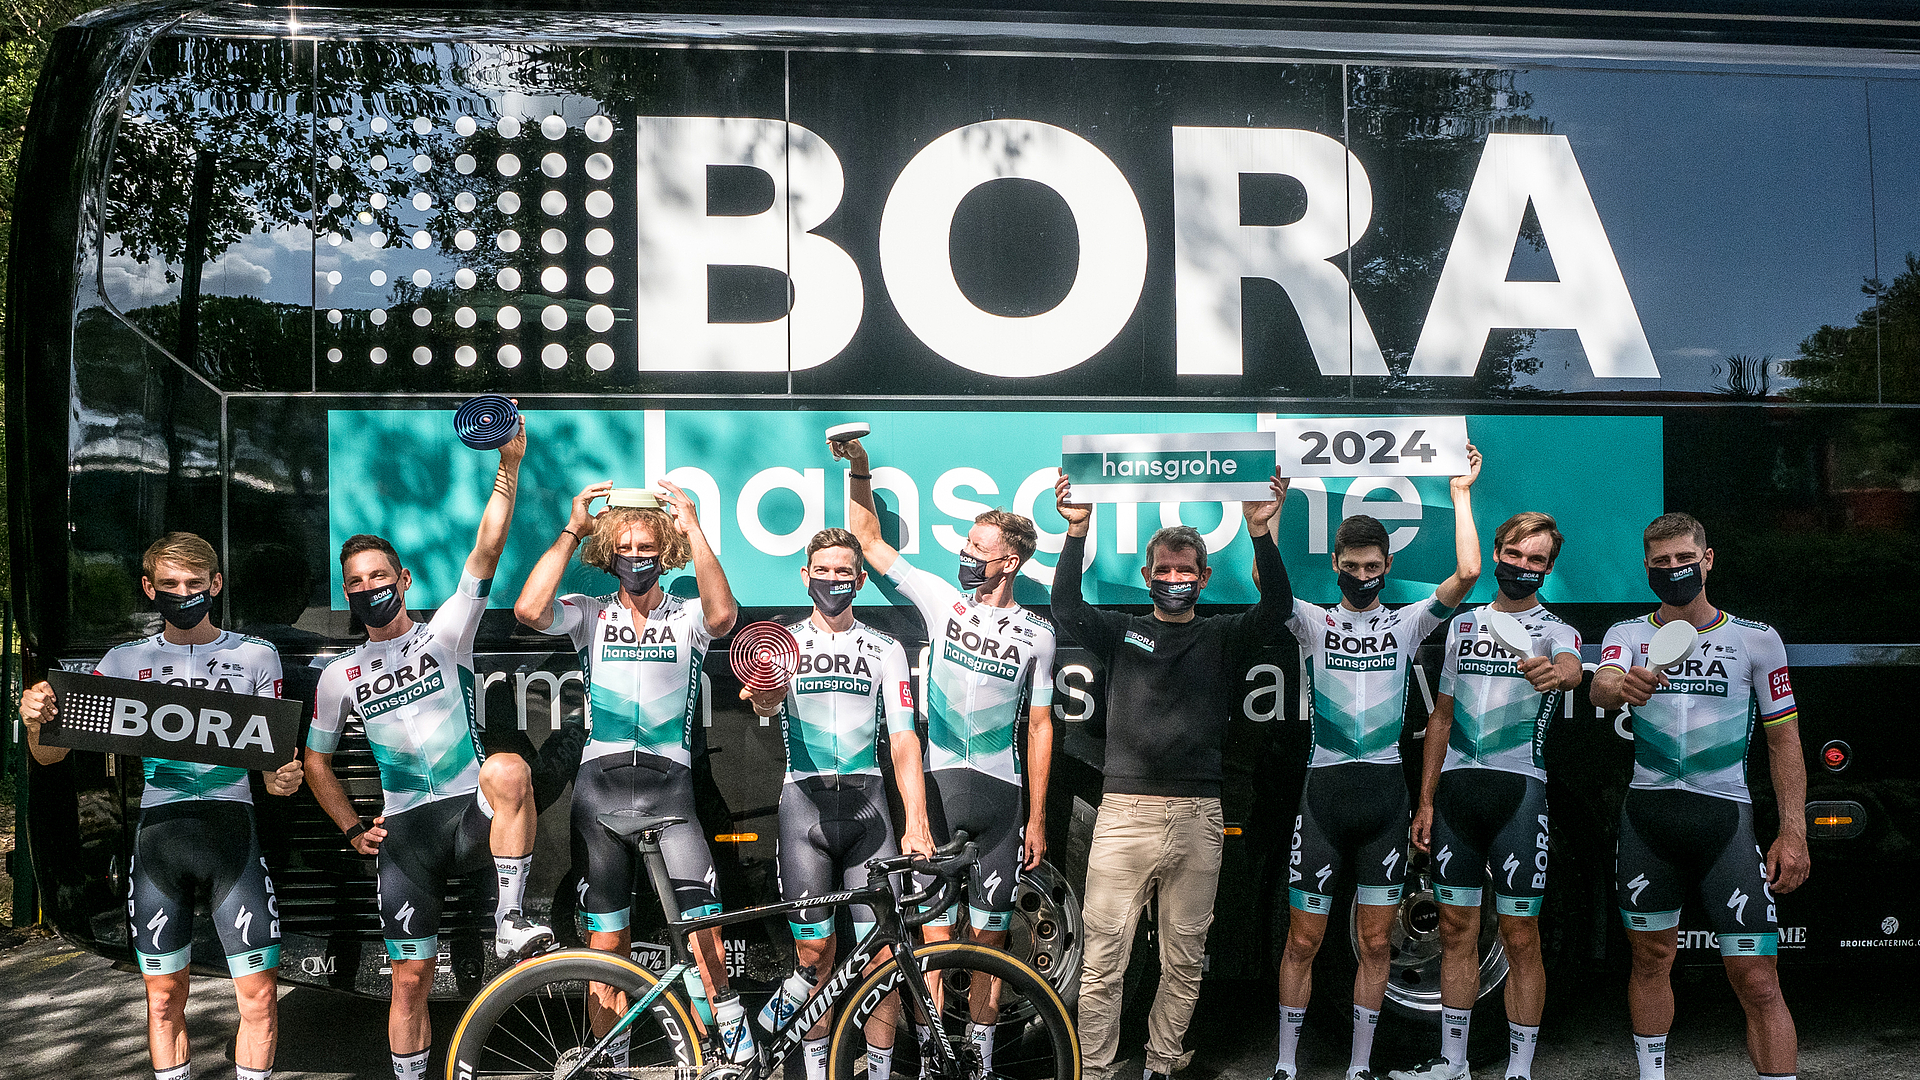 BORA verlängert das Hauptsponsoring für das Radteam BORA – hansgrohe bis 2024